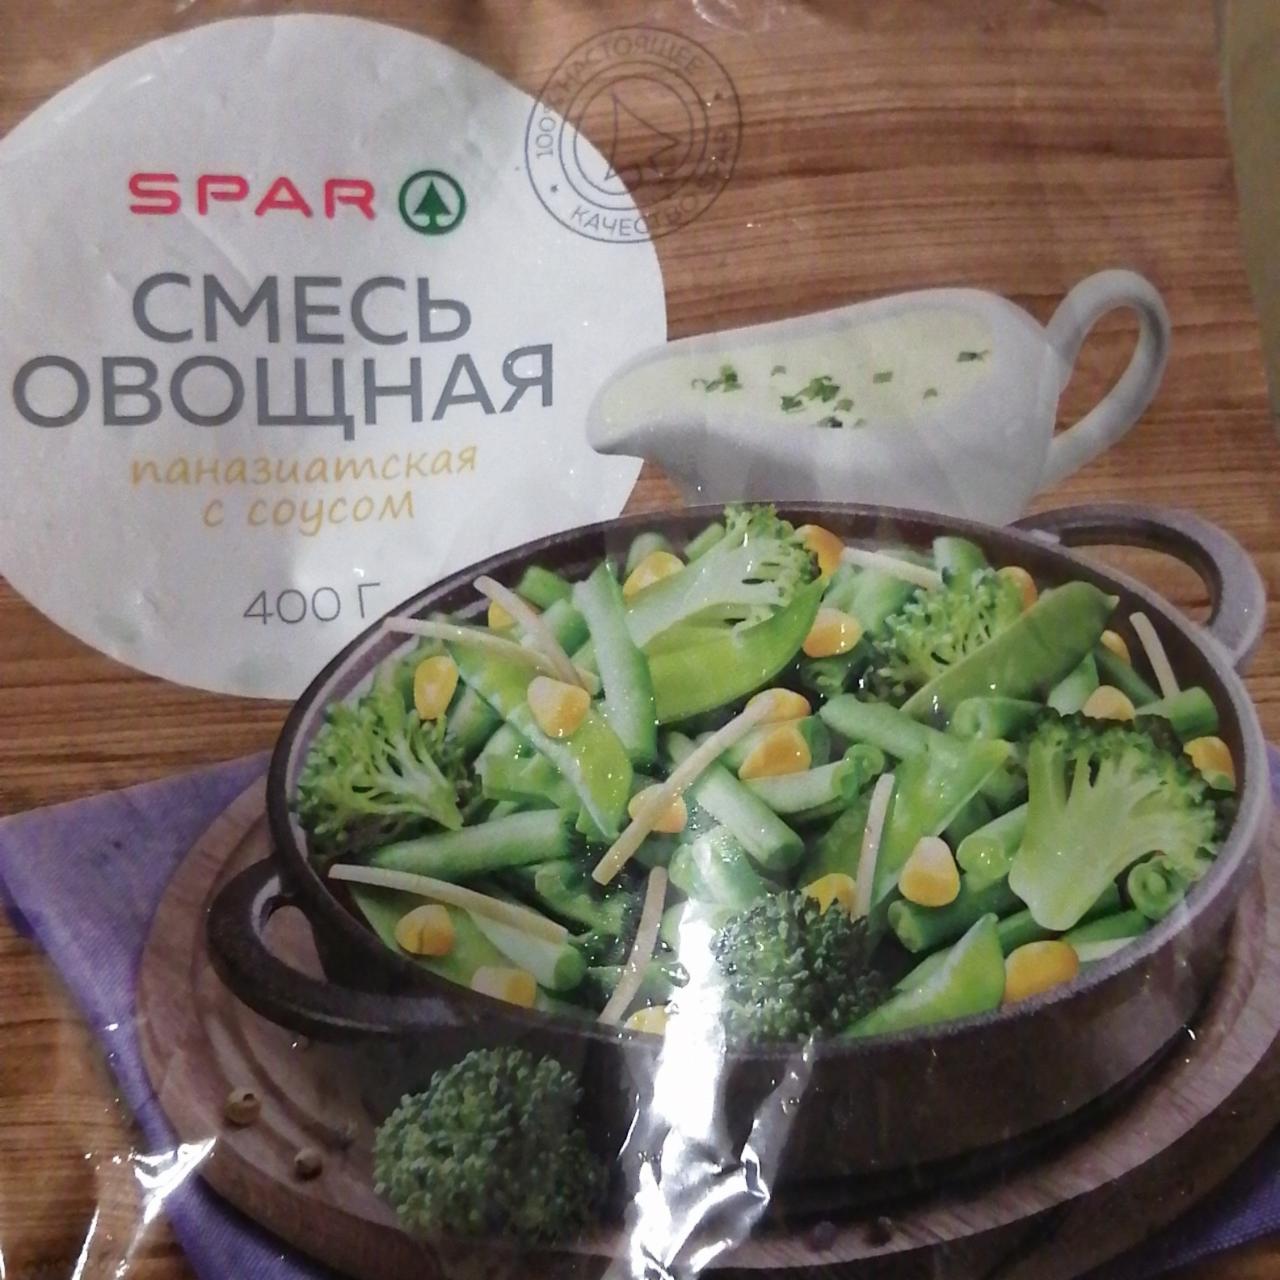 Фото - Смесь овощная паназиатская с соусом Spar